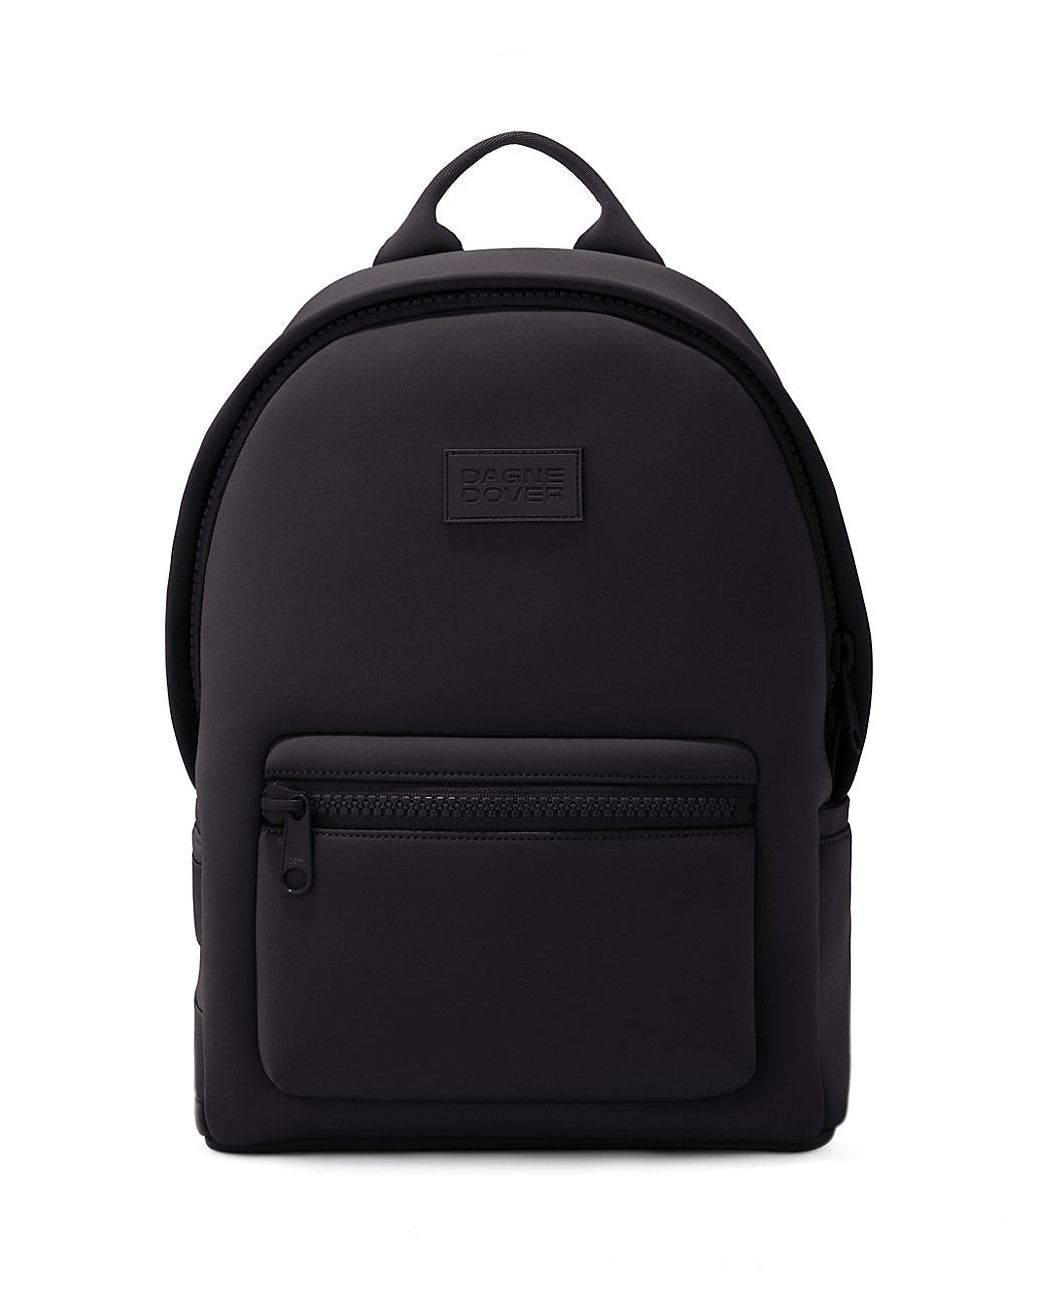 Dagne Dover Medium Dakota Neoprene Backpack in Black | Lyst